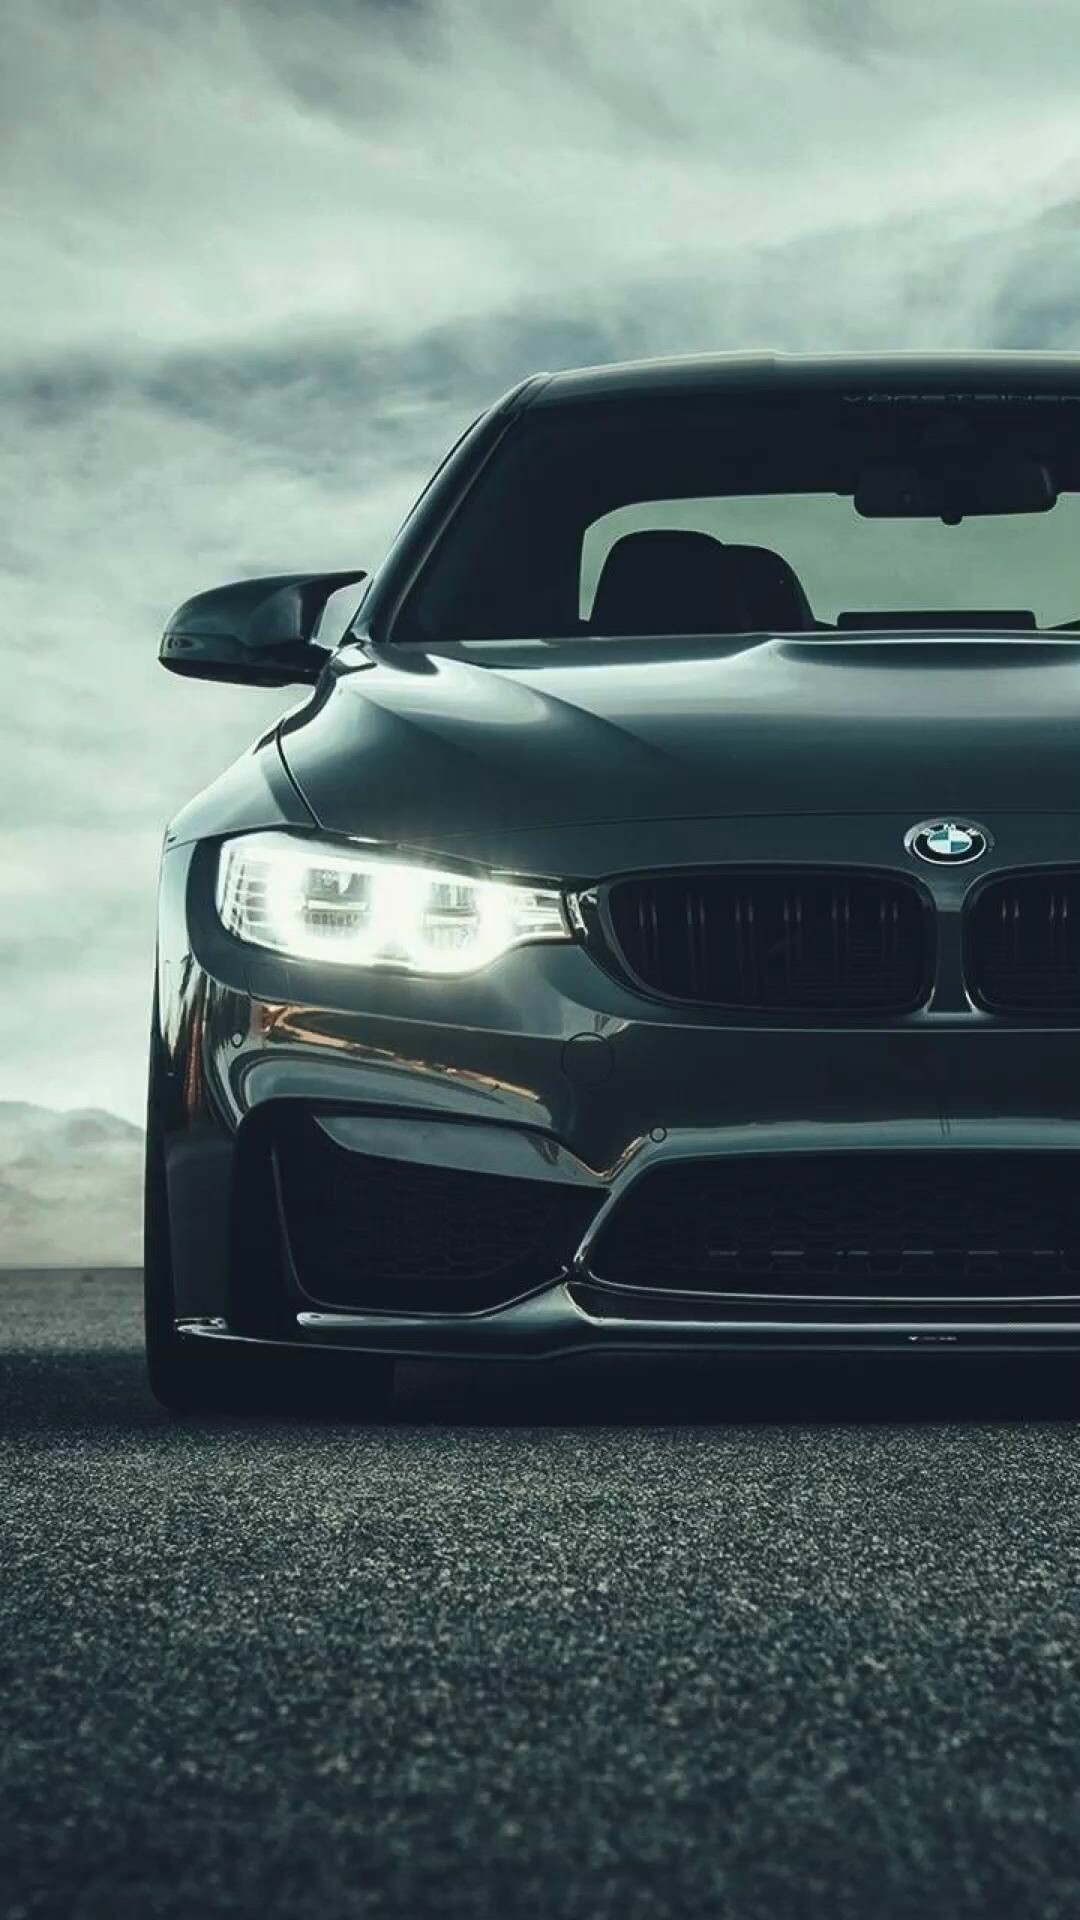 BMW 2 Series: German luxury car brand, Bayerische Motoren Werke AG. 1080x1920 Full HD Background.